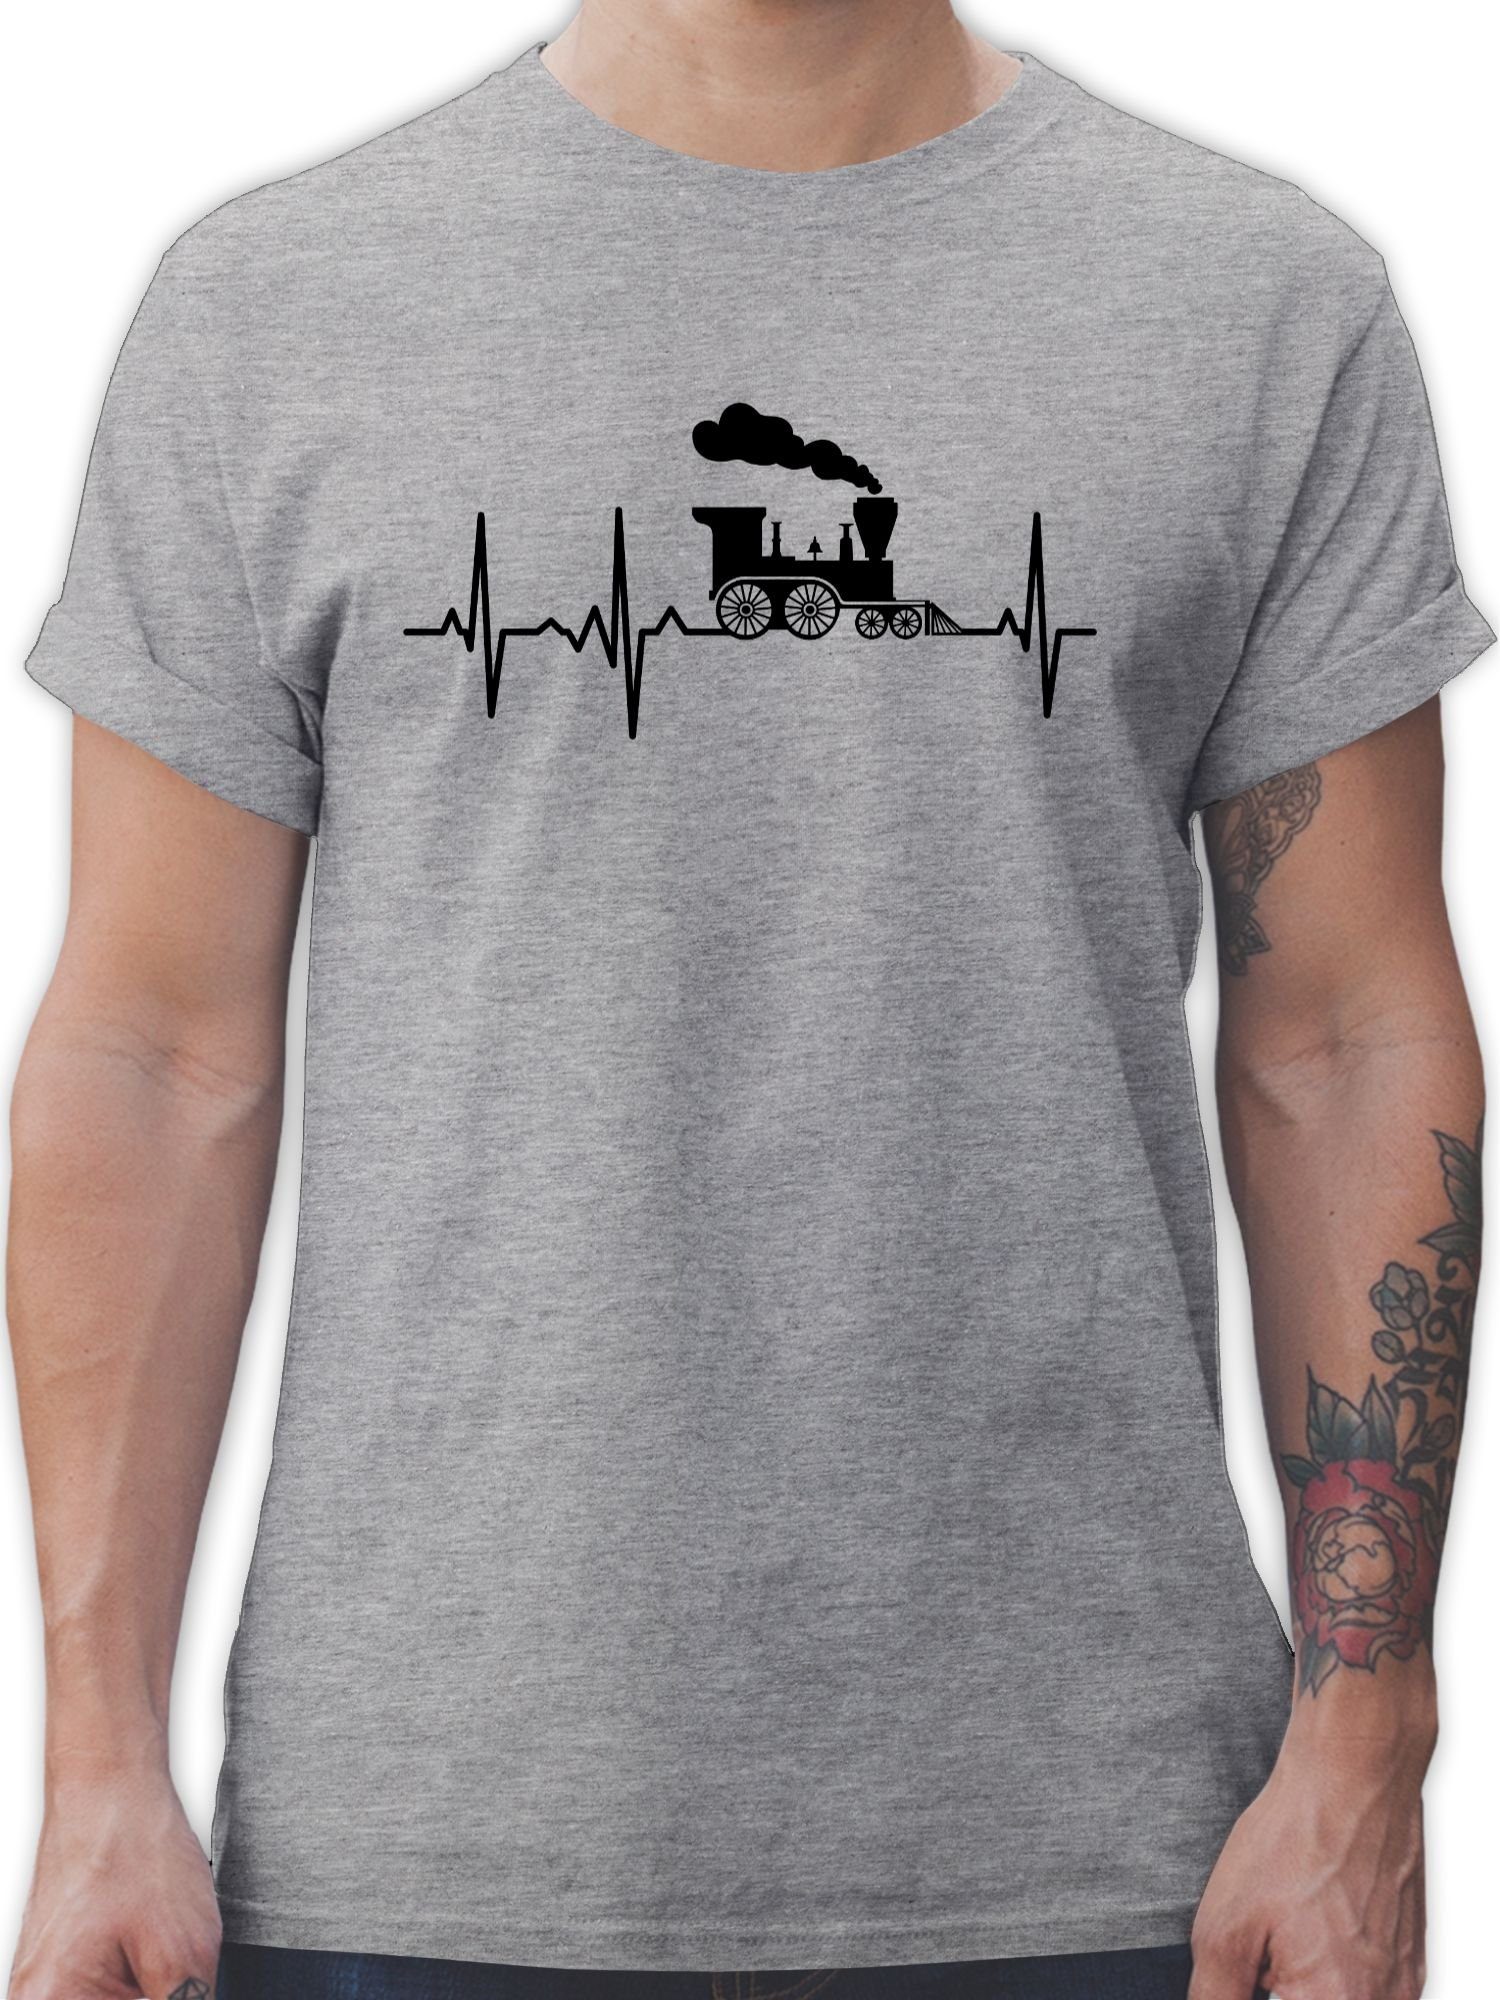 Shirtracer T-Shirt Dampflok Herzschlag I Dampflokomotive Geschenk Eisenbahner Eisenbahnli Hobby Outfit 2 Grau meliert